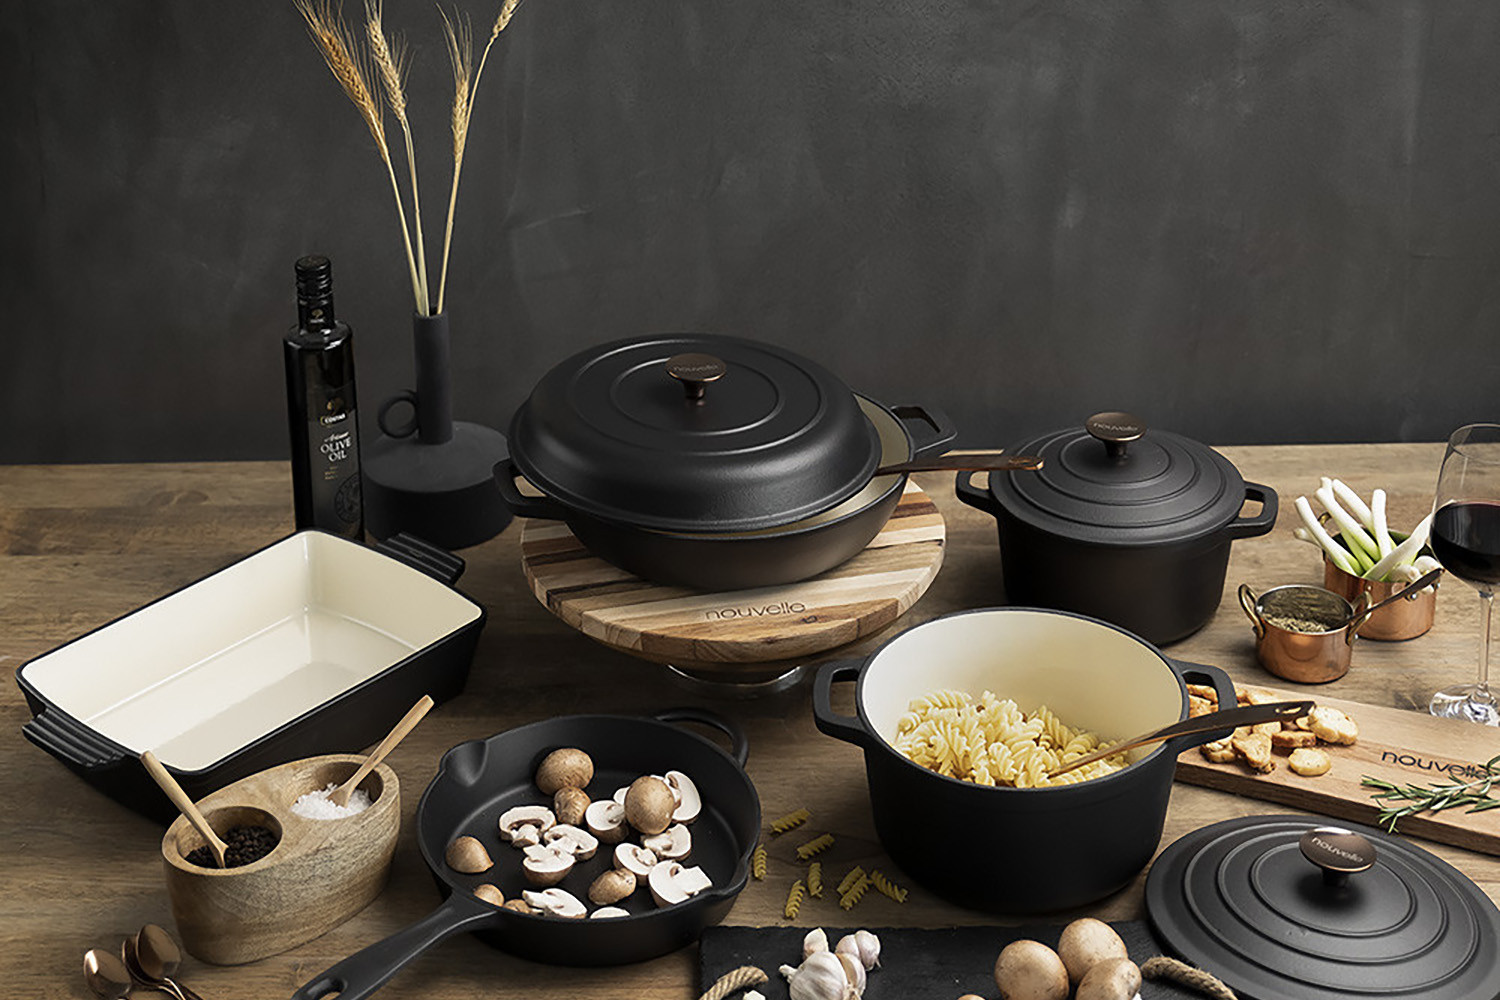 https://www.cielo.co.za/121771-large_default/nouvelle-cast-iron-8-piece-cookware-set-matt-black.jpg